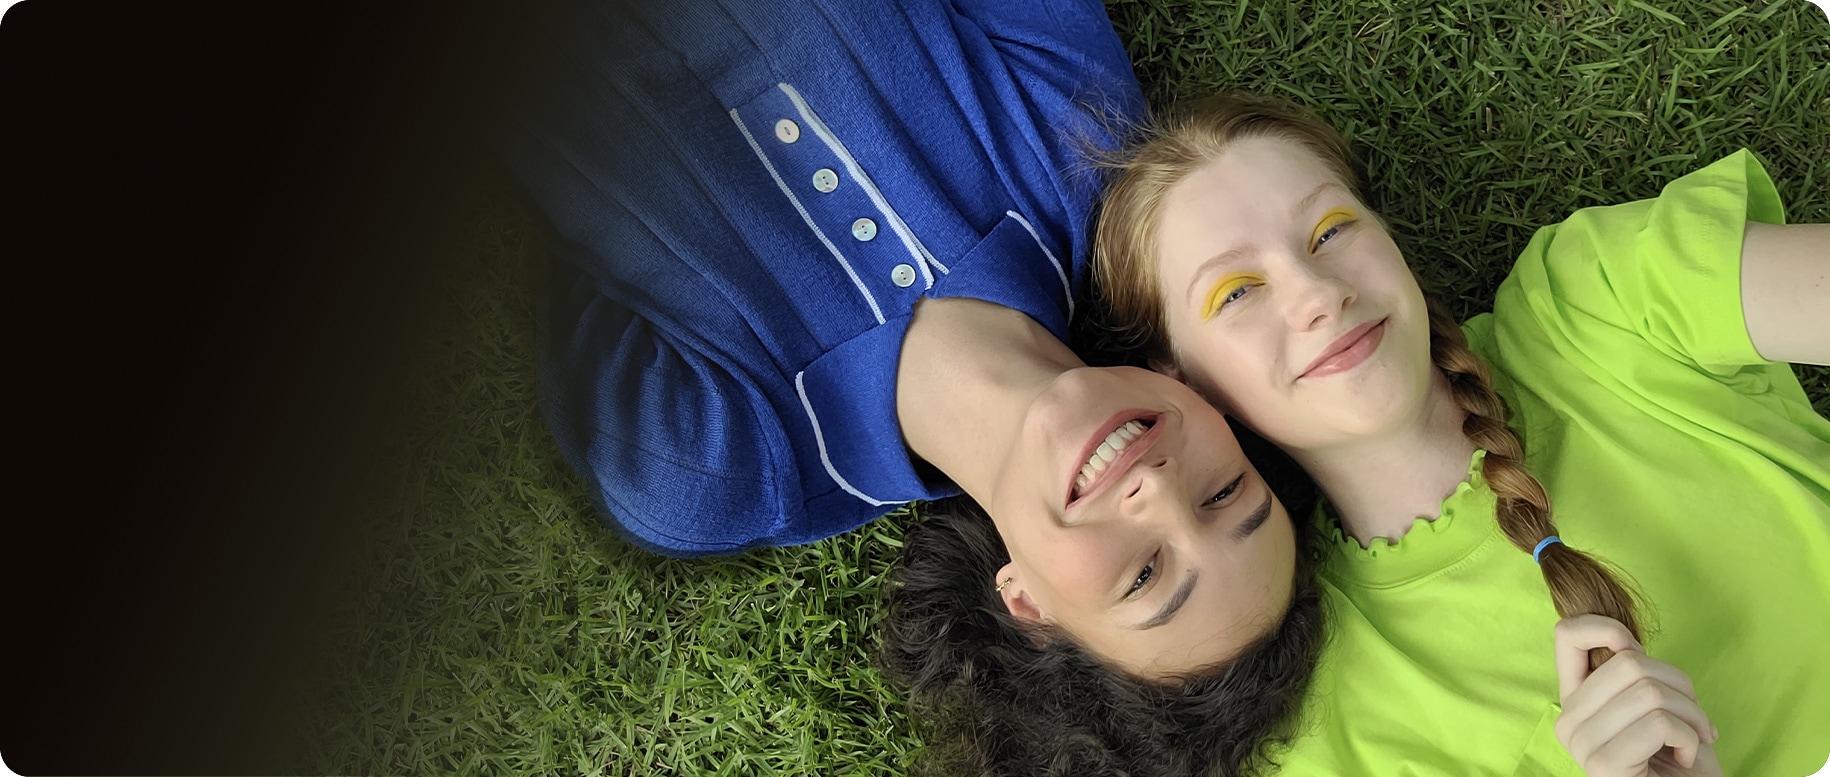 Vista aérea de dos mujeres, una al lado de otra, sobre la hierba. La mujer de la izquierda lleva una camisa con cuello azul mientras que la de la derecha lleva un top verde lima. Tienen juntas sus cabezas desde extremos opuestos. Ambas sonríen a la cámara.